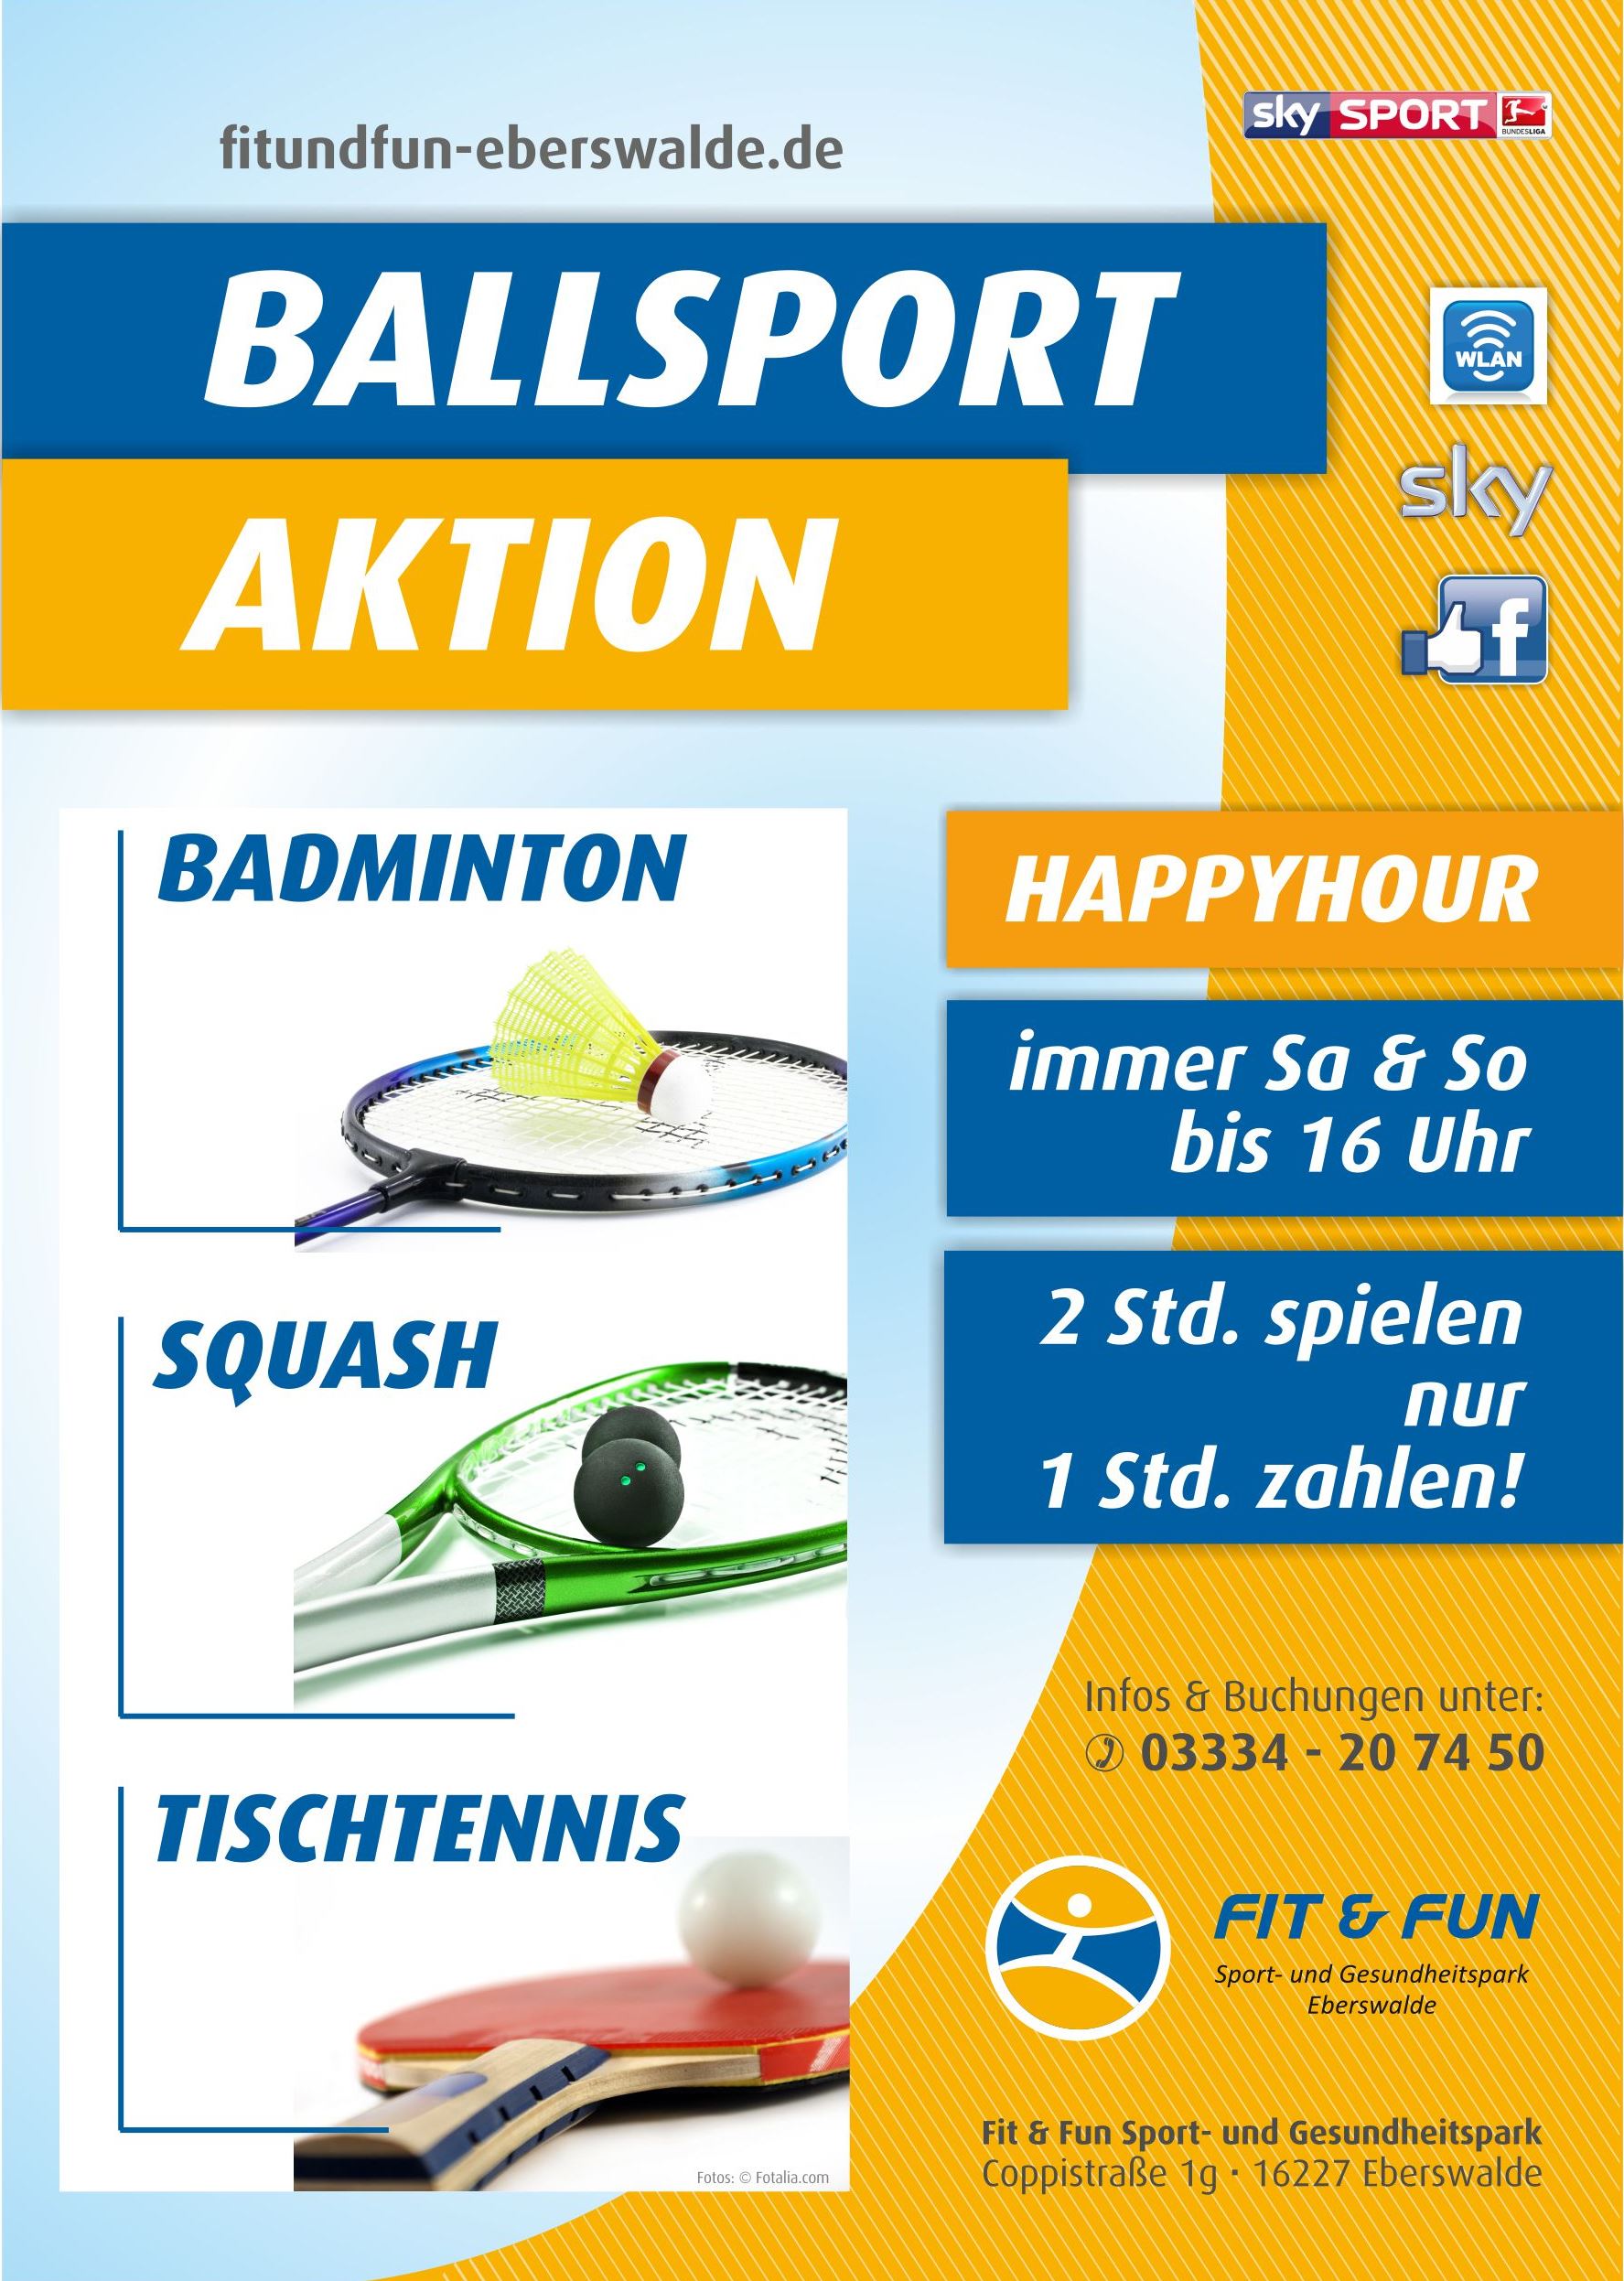 Fanfanfaren, Tröten,  - Ballsportwelt-Shop - Der Sportshop in Zirndorf